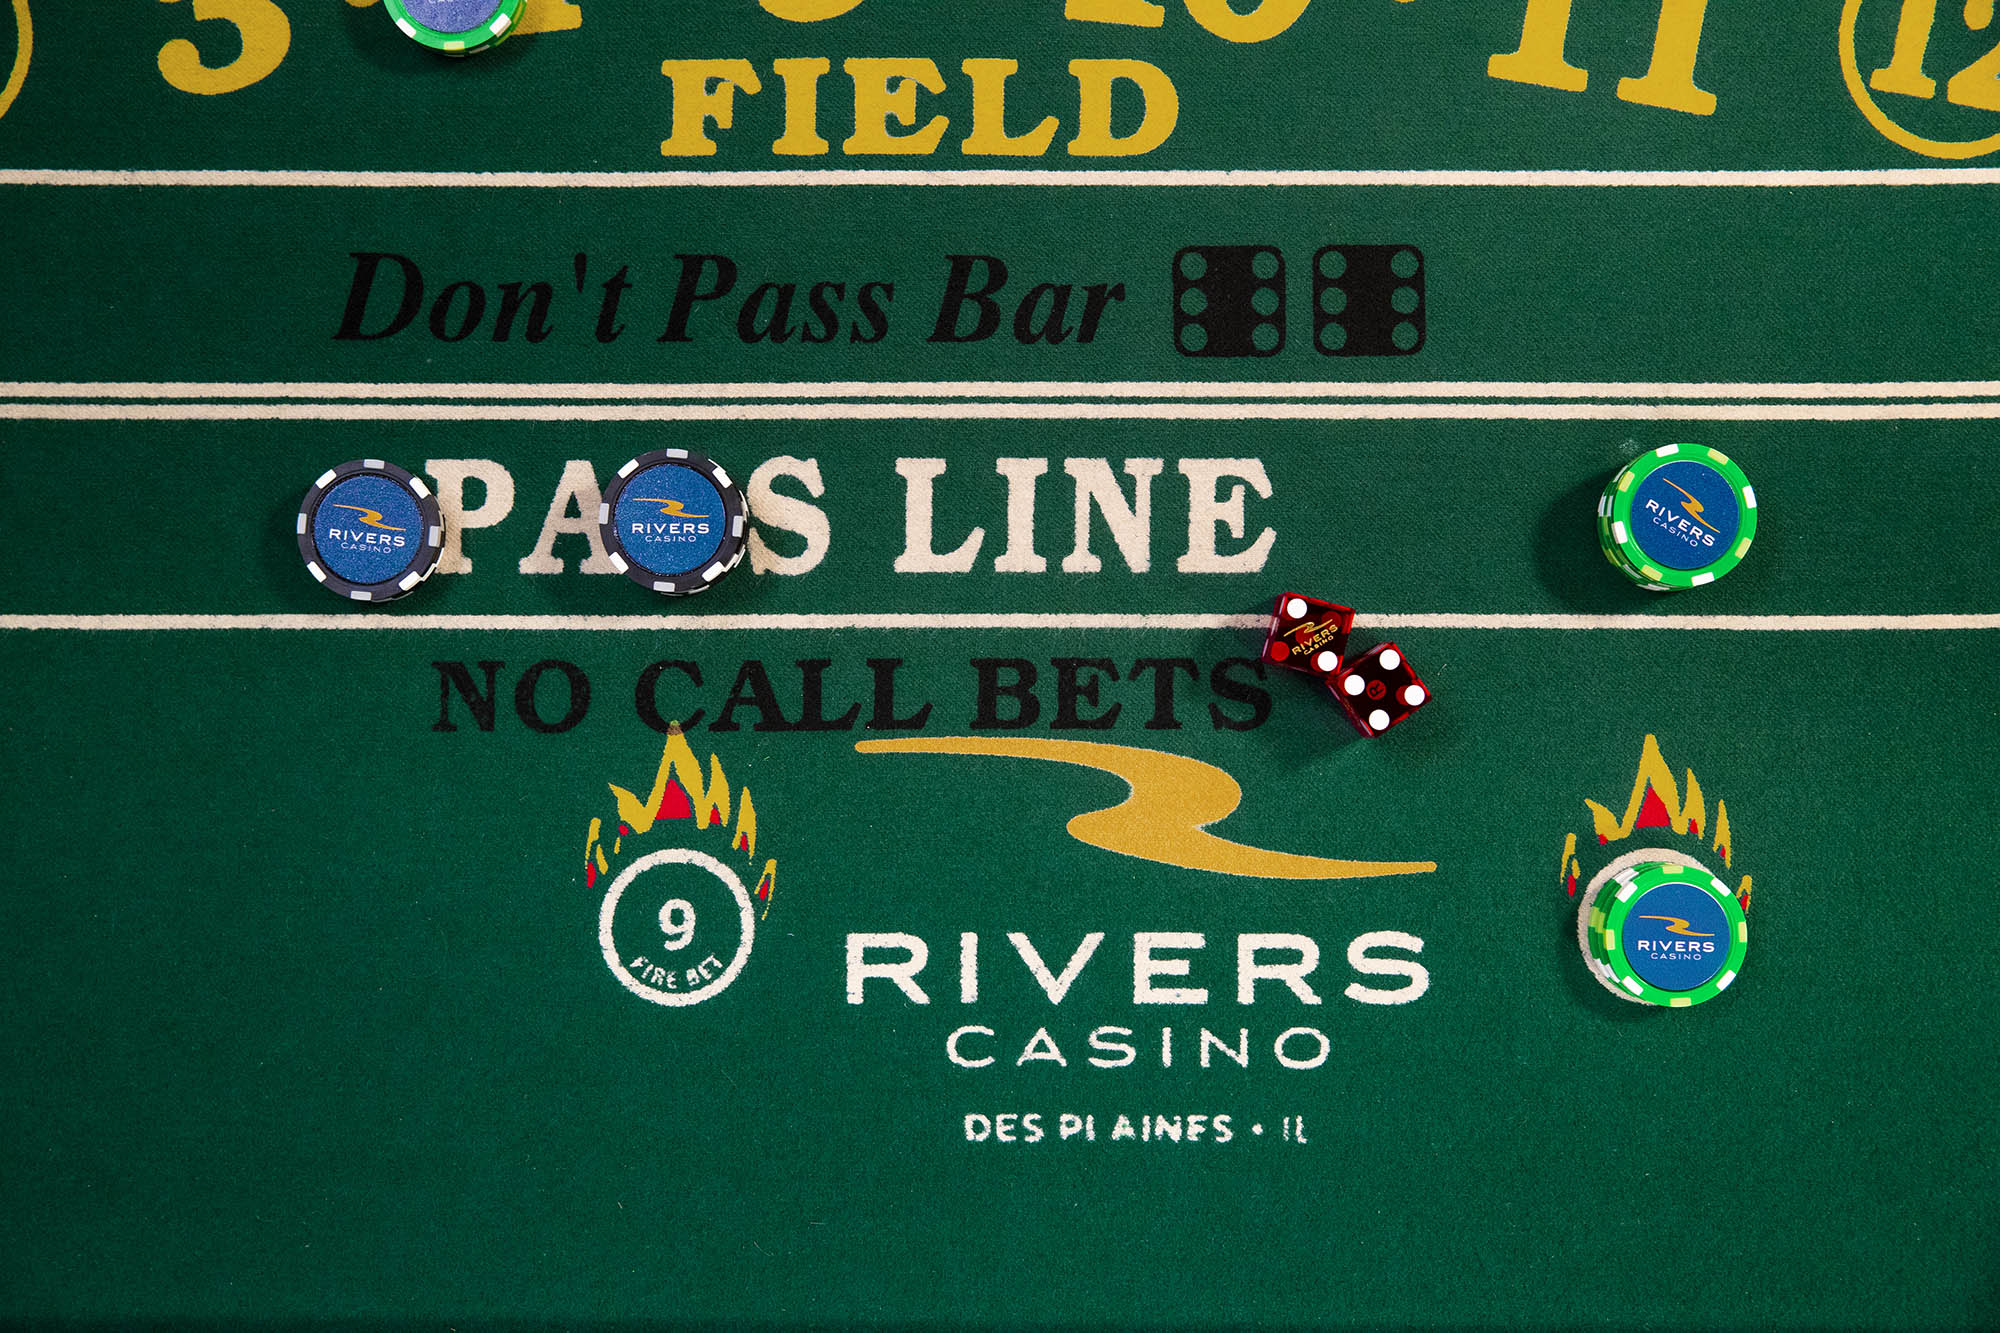 rivers casino club des plaines